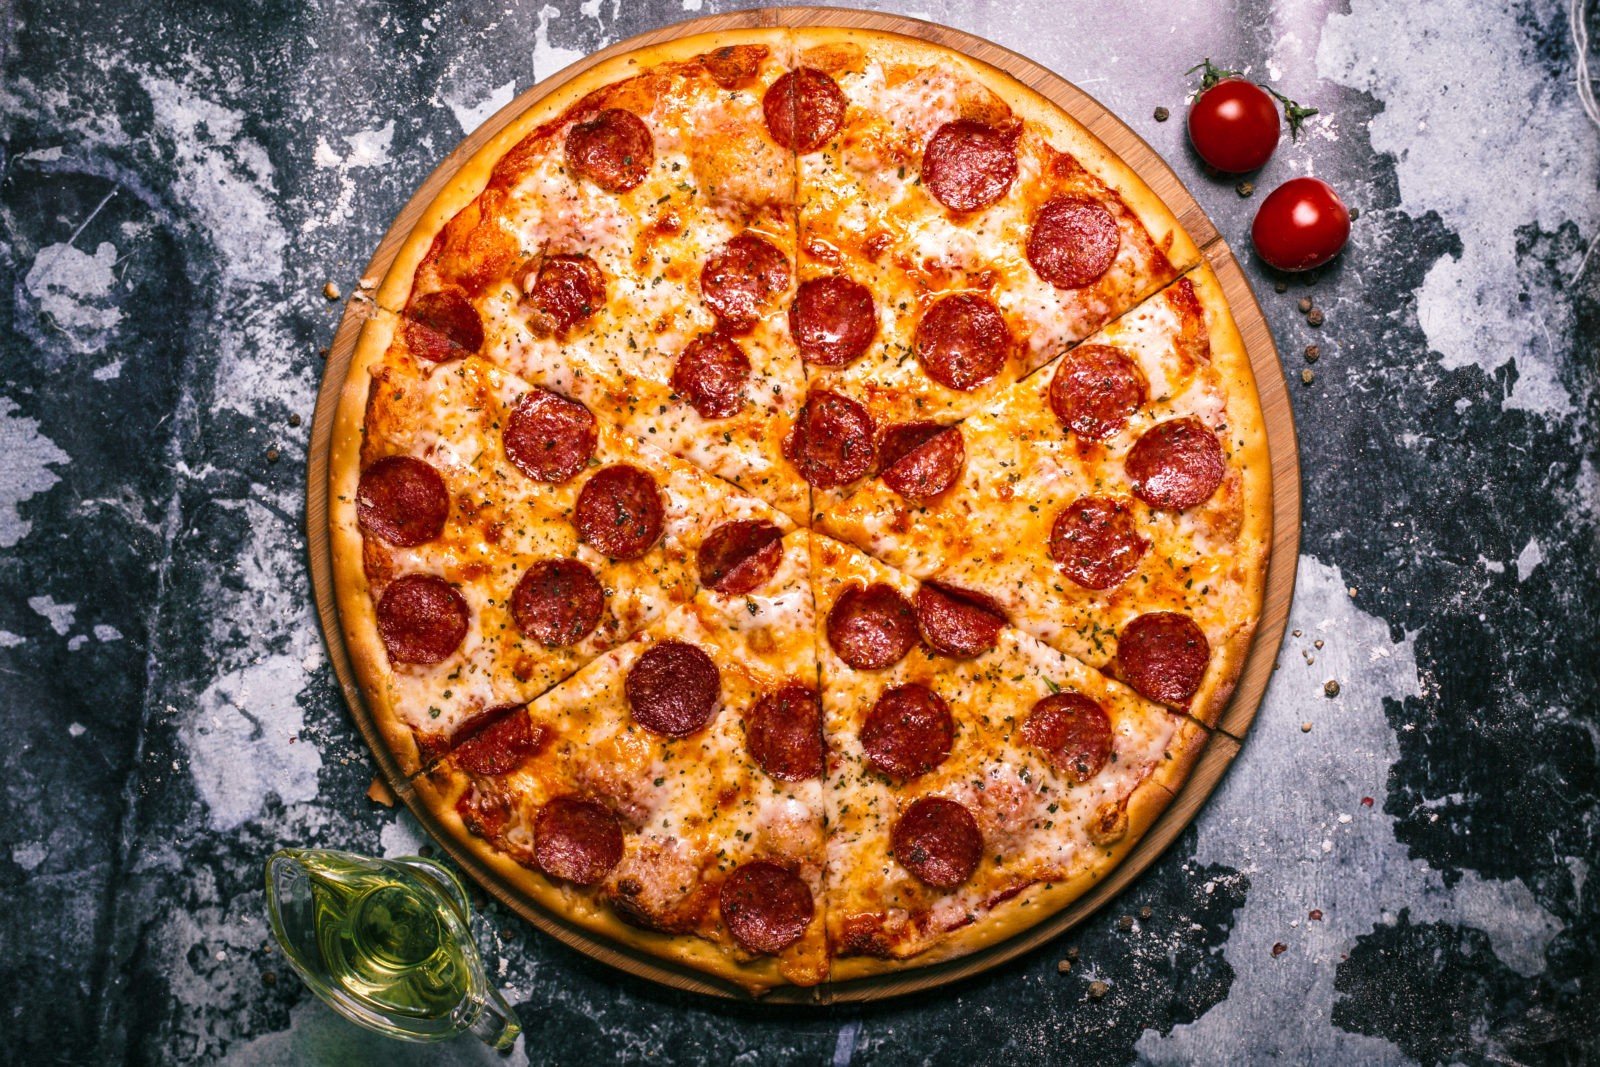 цена на пиццу пепперони фото 89